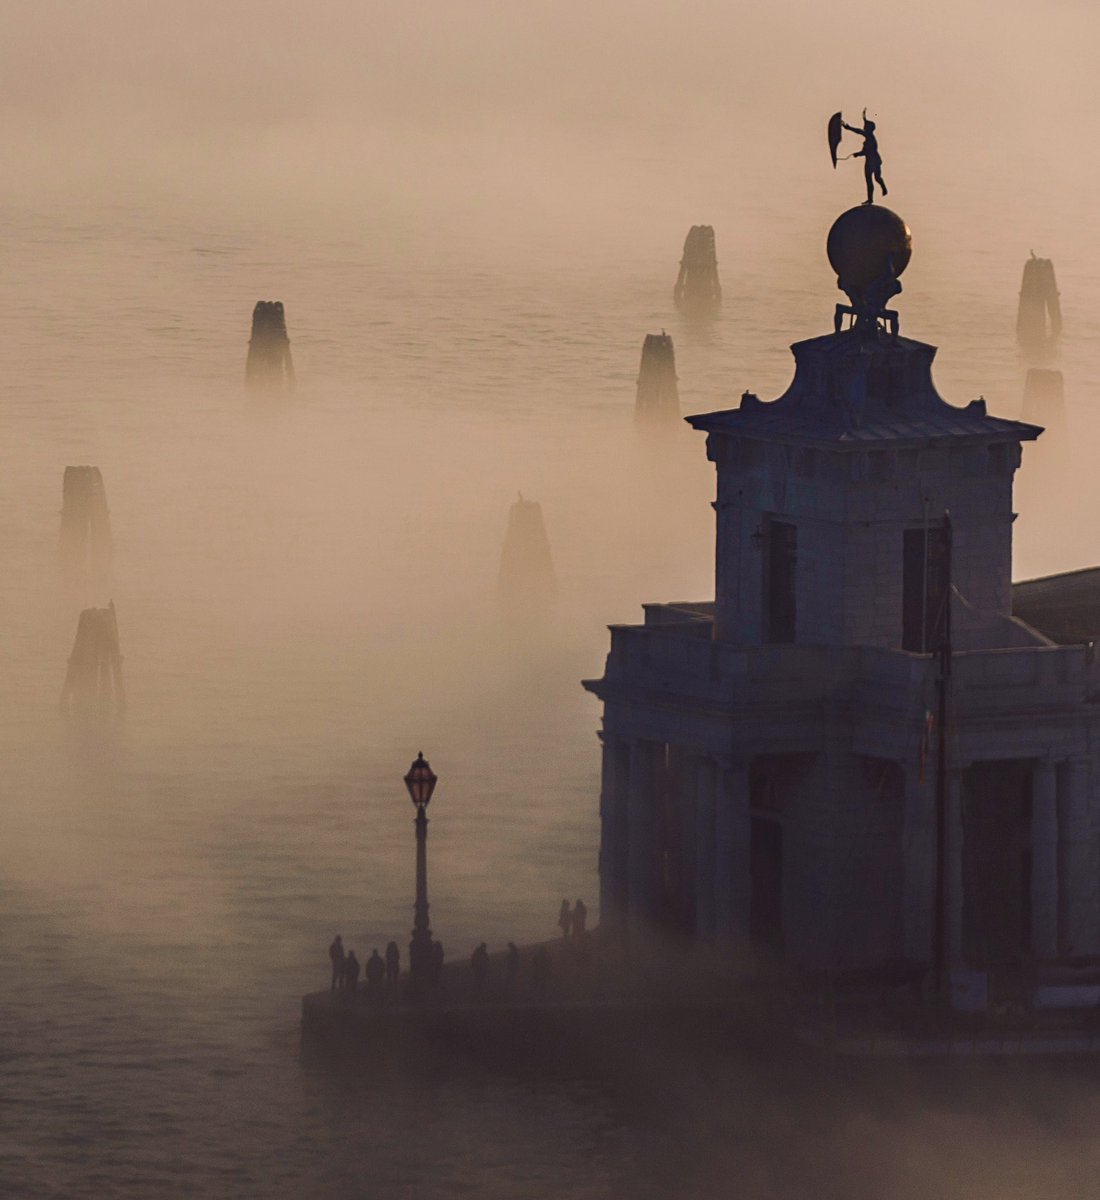 Foggy Ruins of Time…#photography #Venezia #Venice #Light #Italia #Italy #Veneto #Dylan